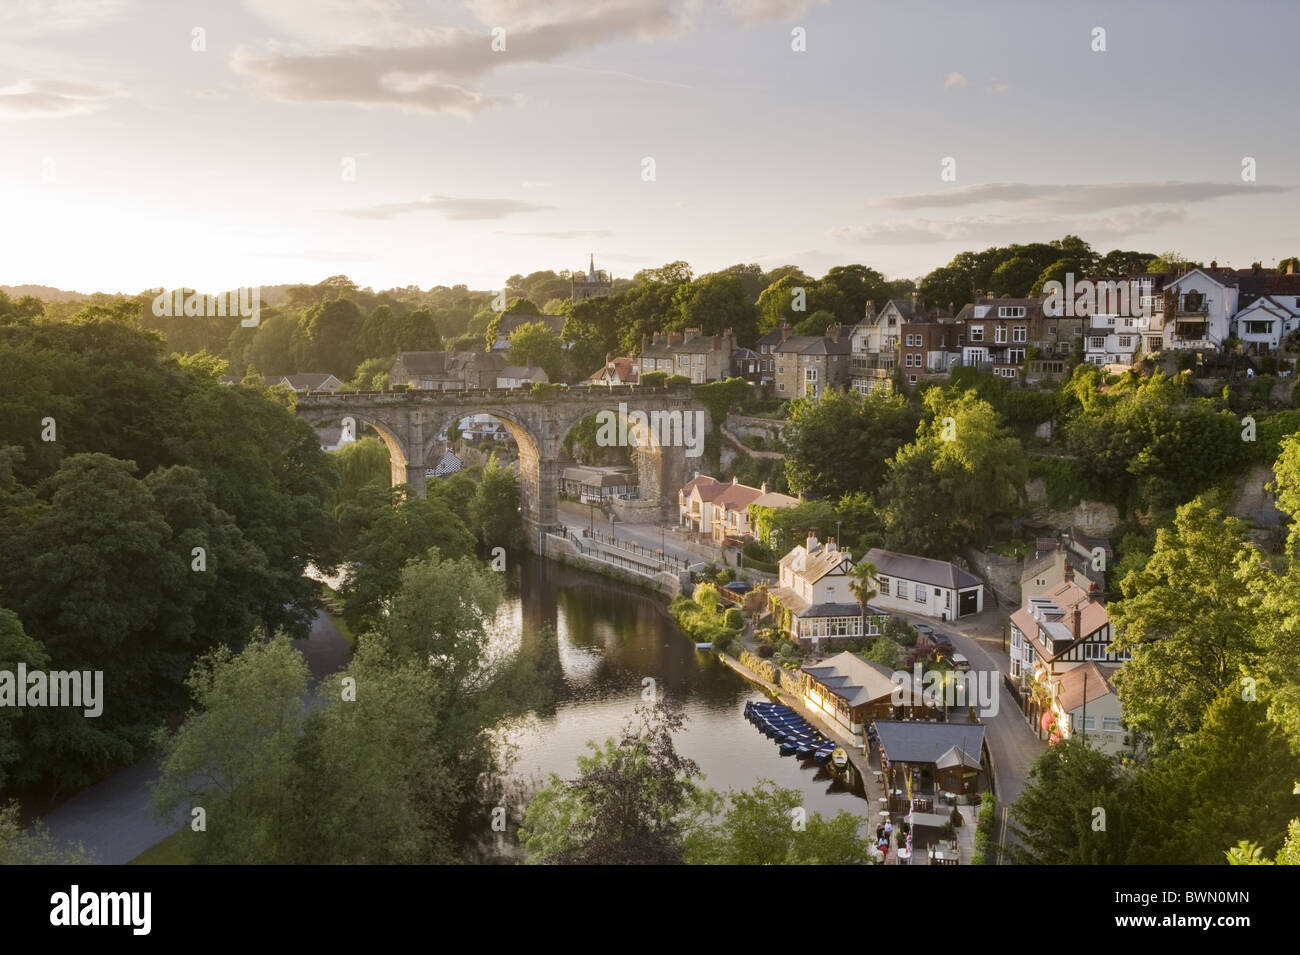 Einen herrlichen Blick auf den Sonnenuntergang über der sonnenbeschienenen Viadukt, Riverside Gebäude, Häuser & Reflexionen auf dem Fluss Nidd - Knaresborough, North Yorkshire, England, UK. Stockfoto